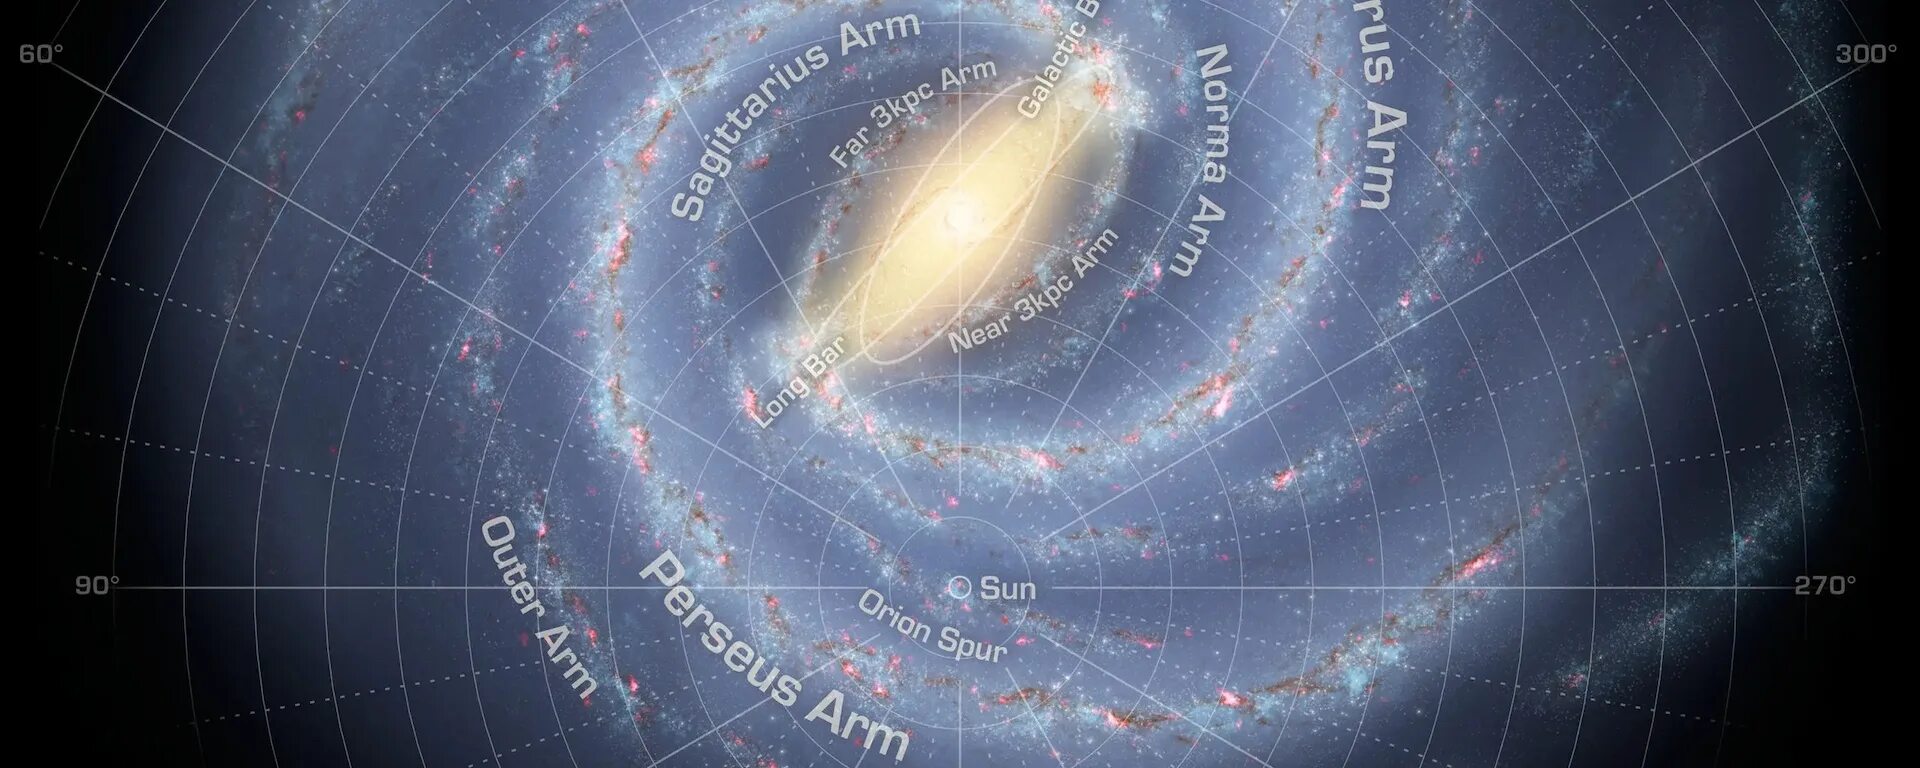 Второй лучший госпиталь в галактике 2024. Место земли в галактике Млечный путь. Карта Галактики Млечный путь. Солнце в галактике Млечный путь. Наше место в галактике Млечный путь.